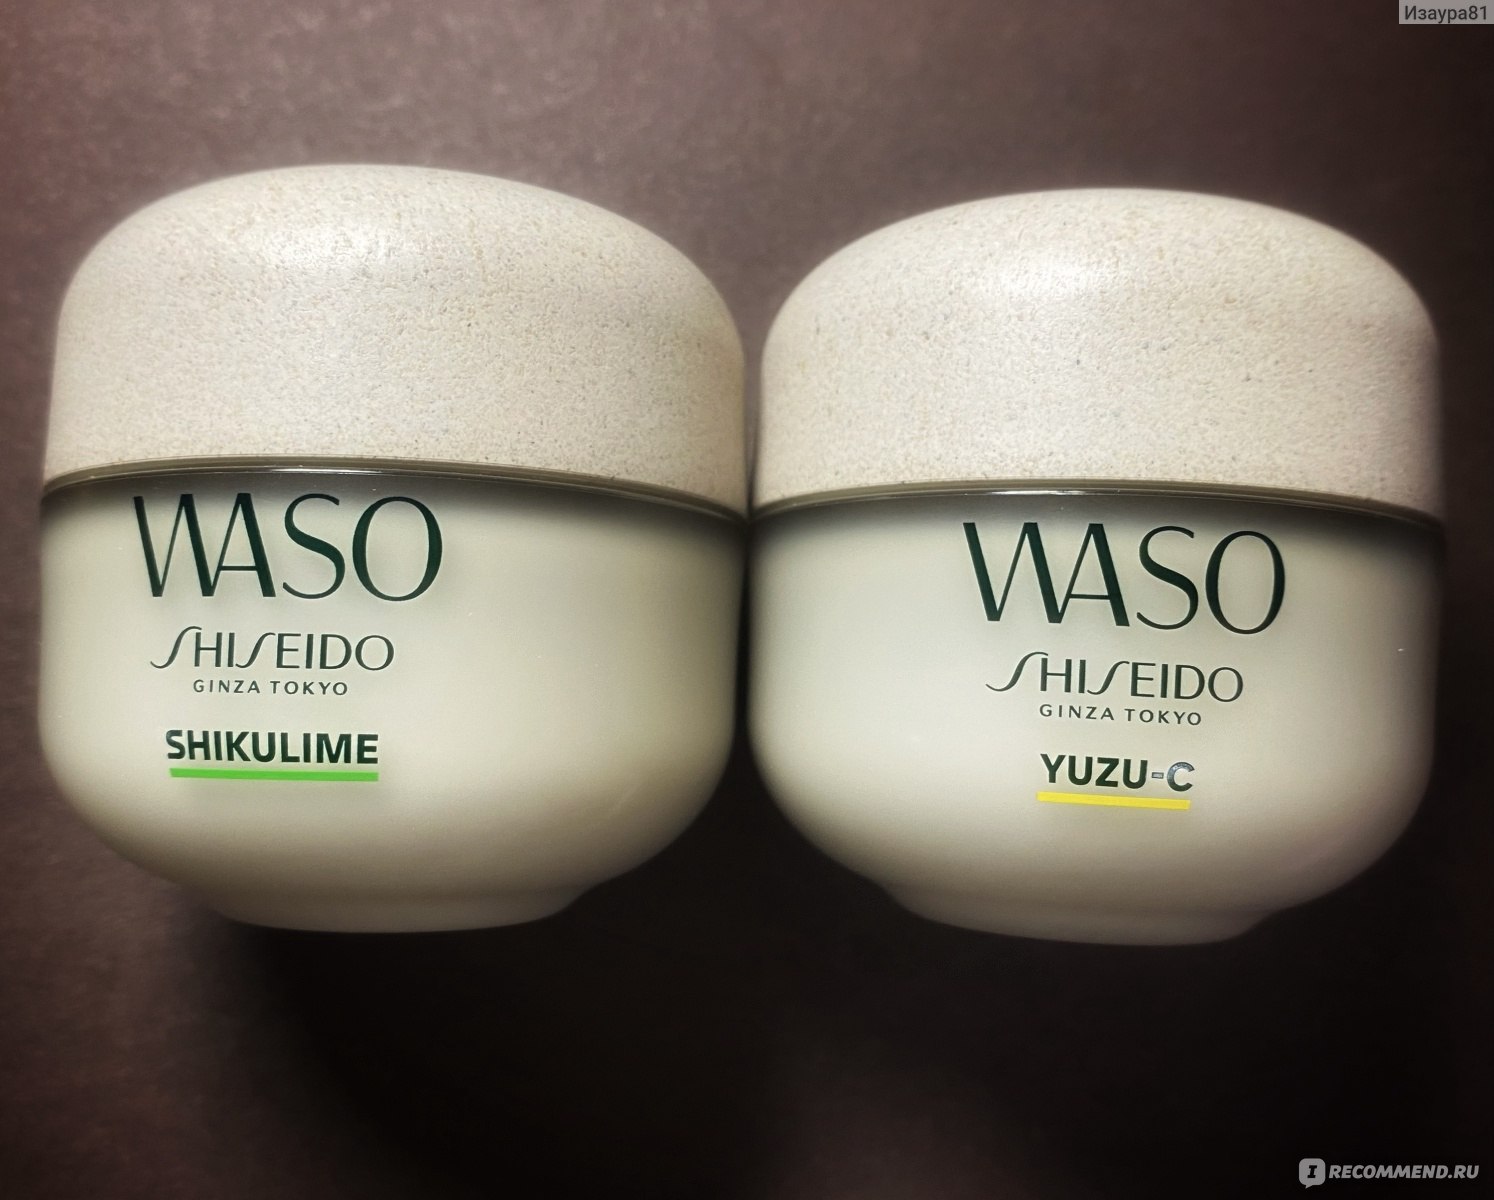 Shiseido shikulime. Шисейдо суперувлажняющий крем. Shiseido shikulime крем.